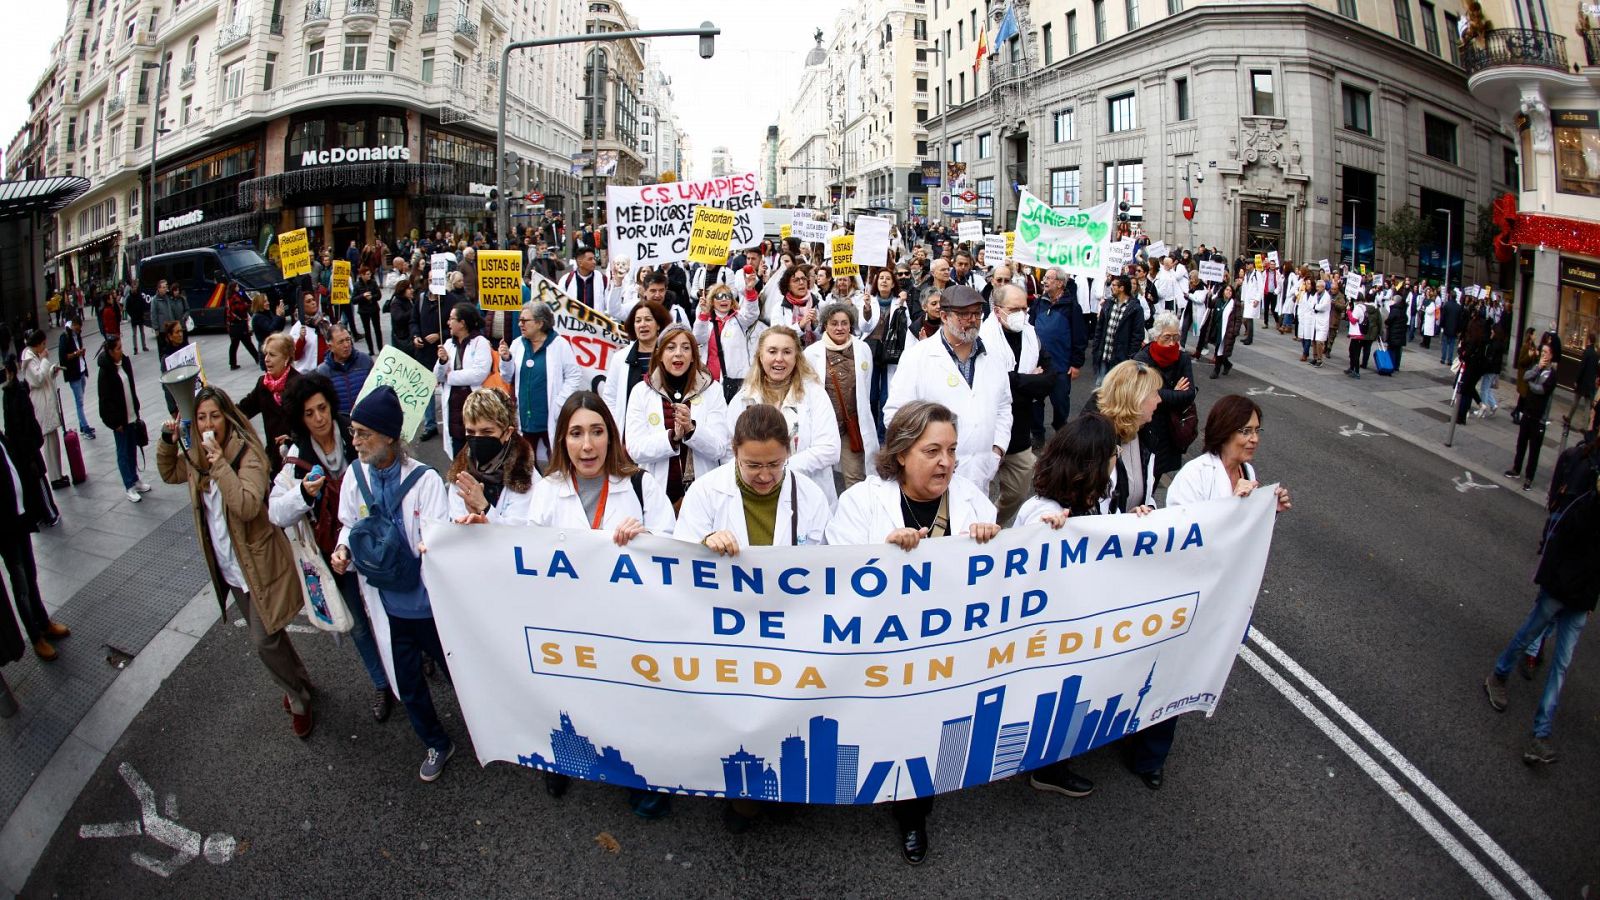 Médicos y pediatras se encierran en la Consejería de Sanidad de Madrid para demostrar que están "dispuestos a negociar"